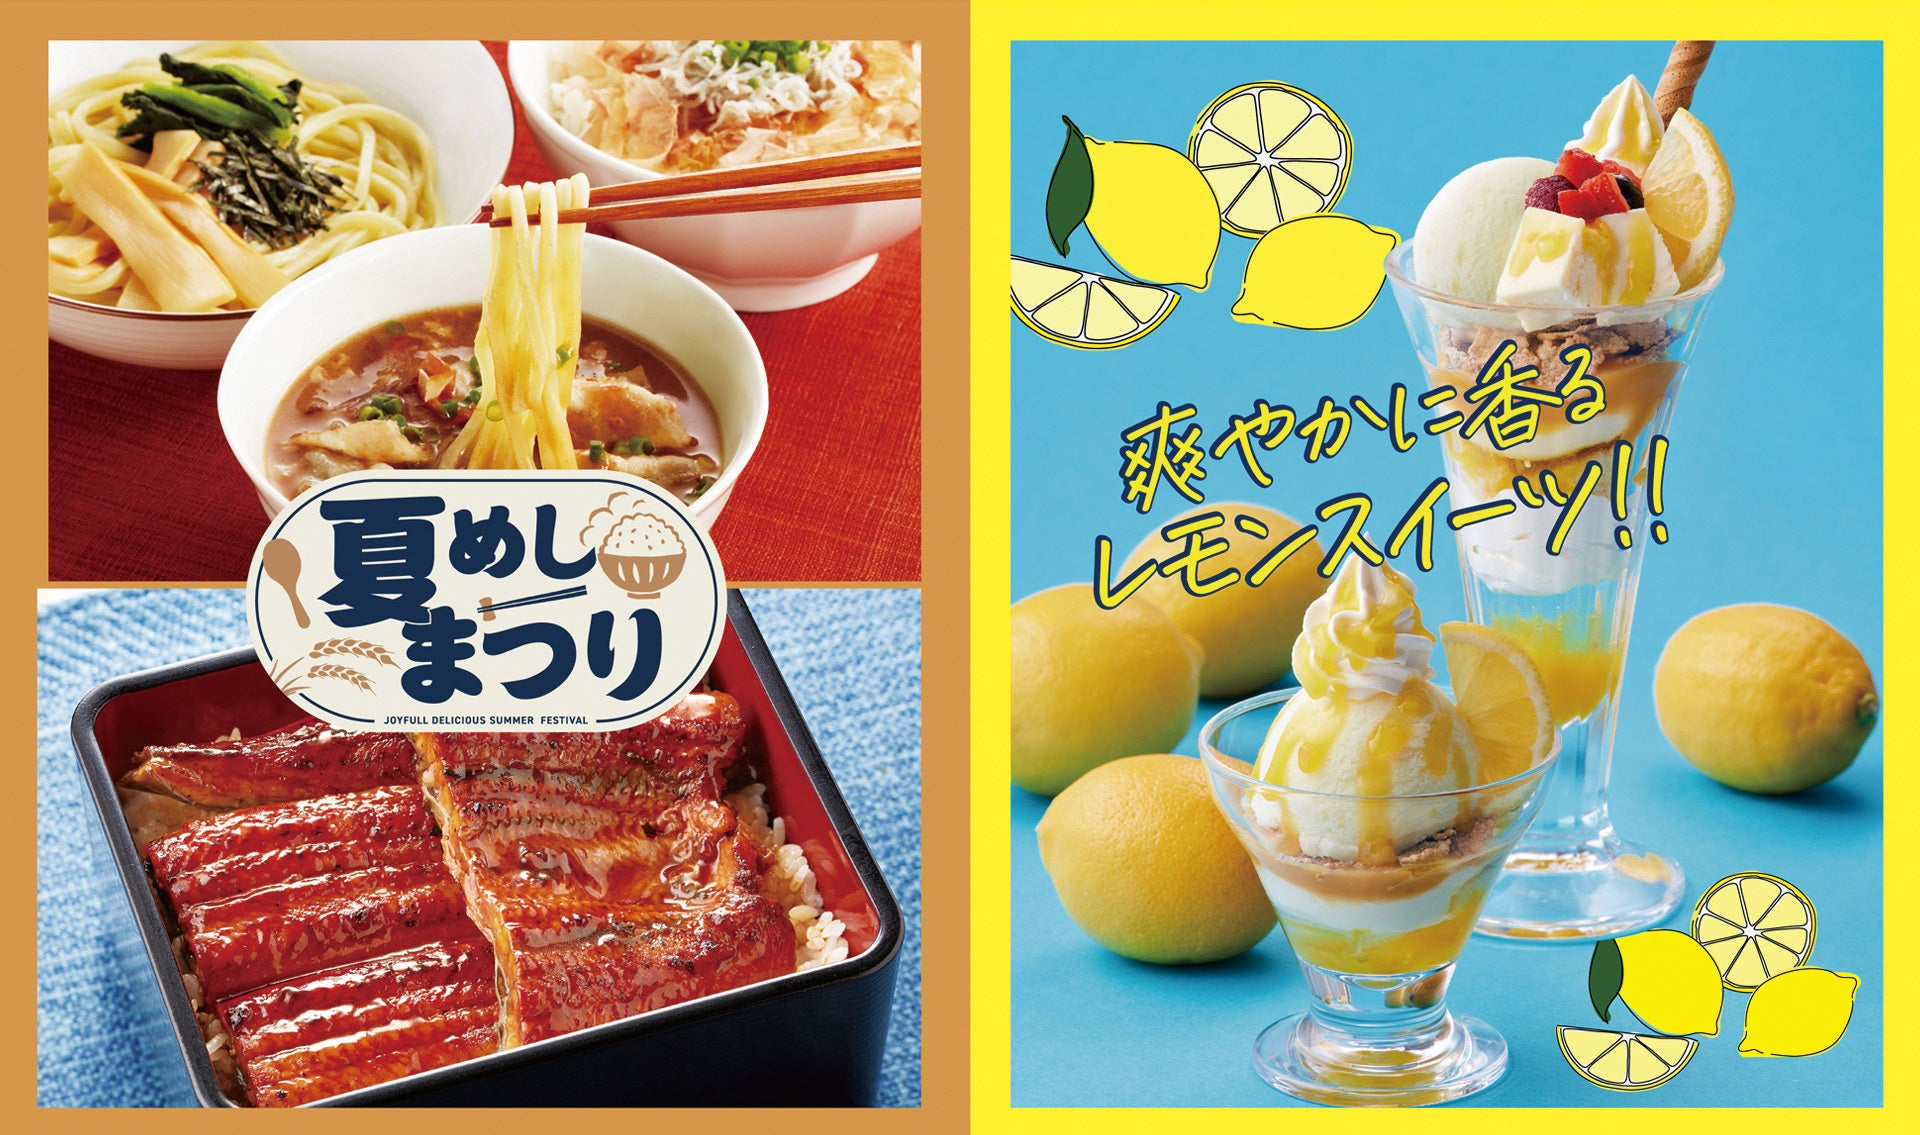 旗艦店 RITUEL 虎ノ門より焼き菓子を主役にした「 SUMMMER FRUIT AFTERNOON TEA 」が新登場！